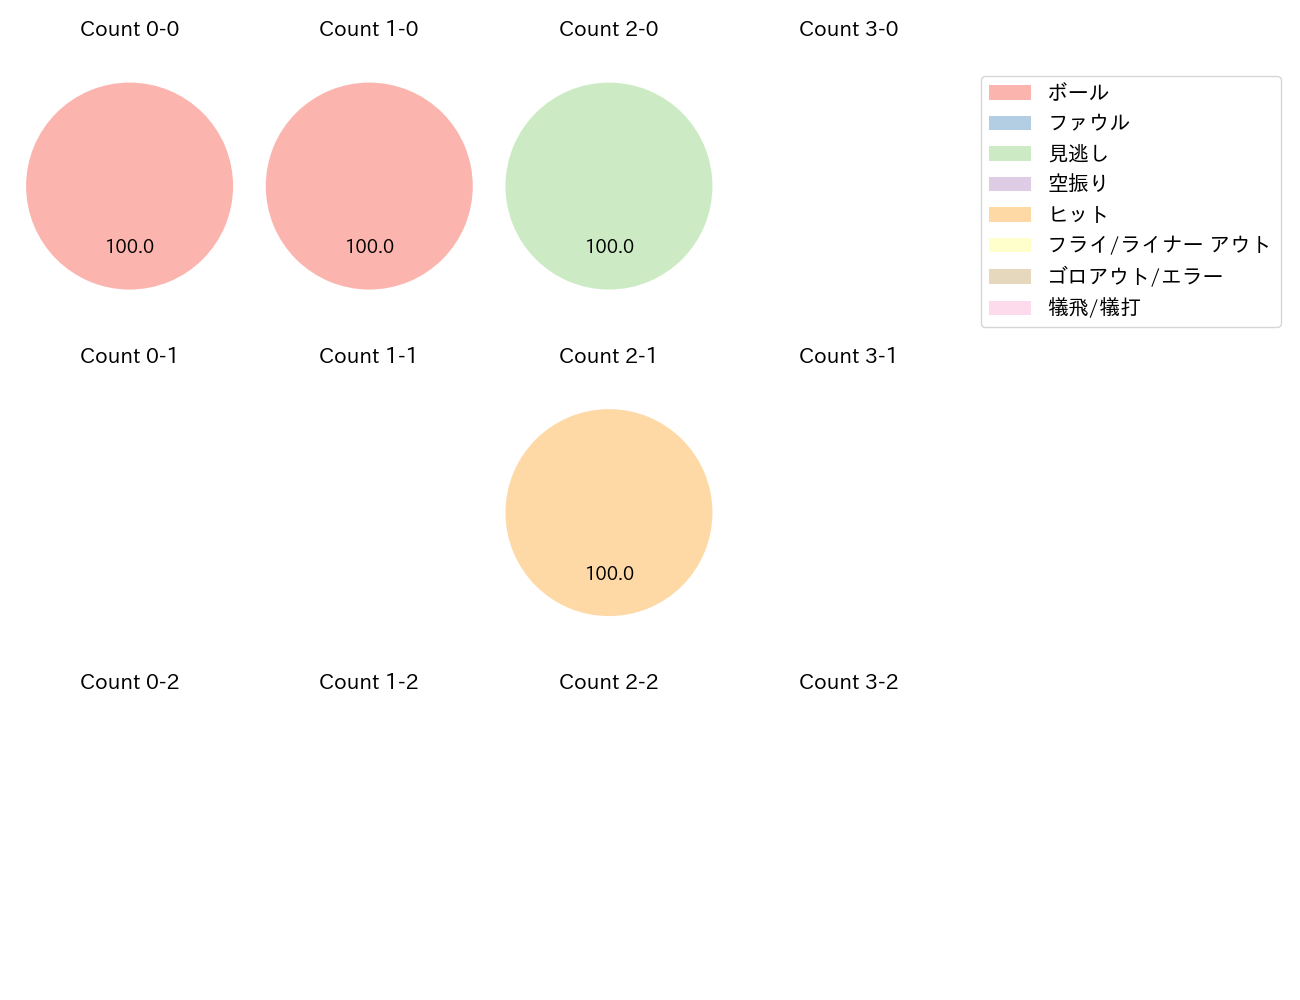 村上 頌樹の球数分布(2021年8月)